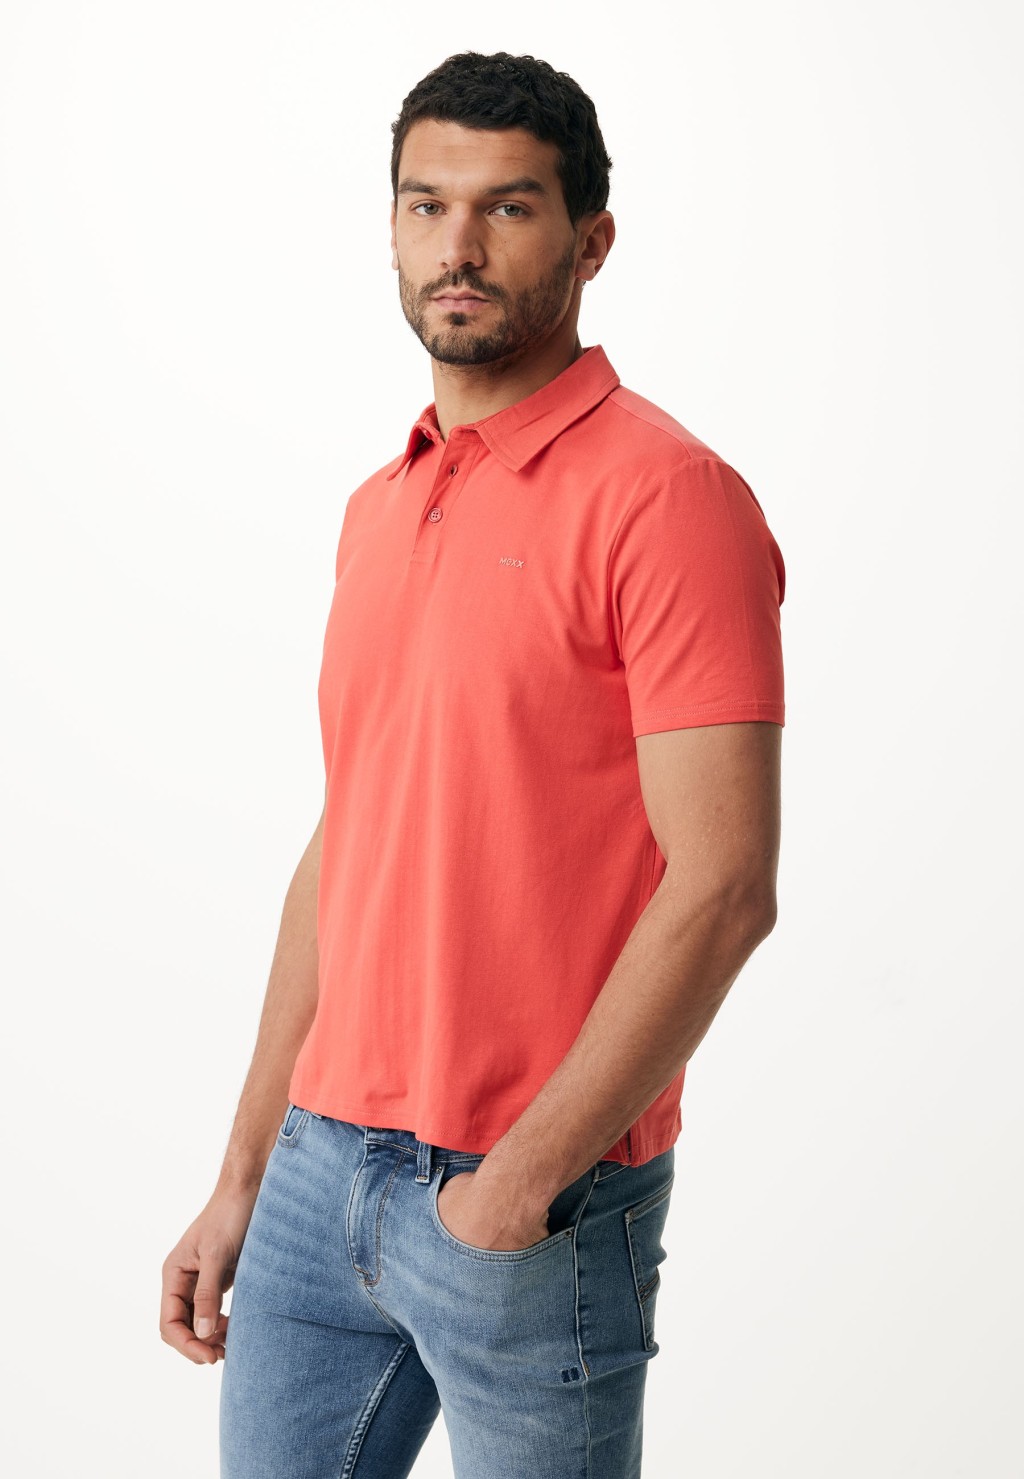 Сорочка Mexx для мужчин, с воротником поло, ZN1406033M, размер L, Bright Red